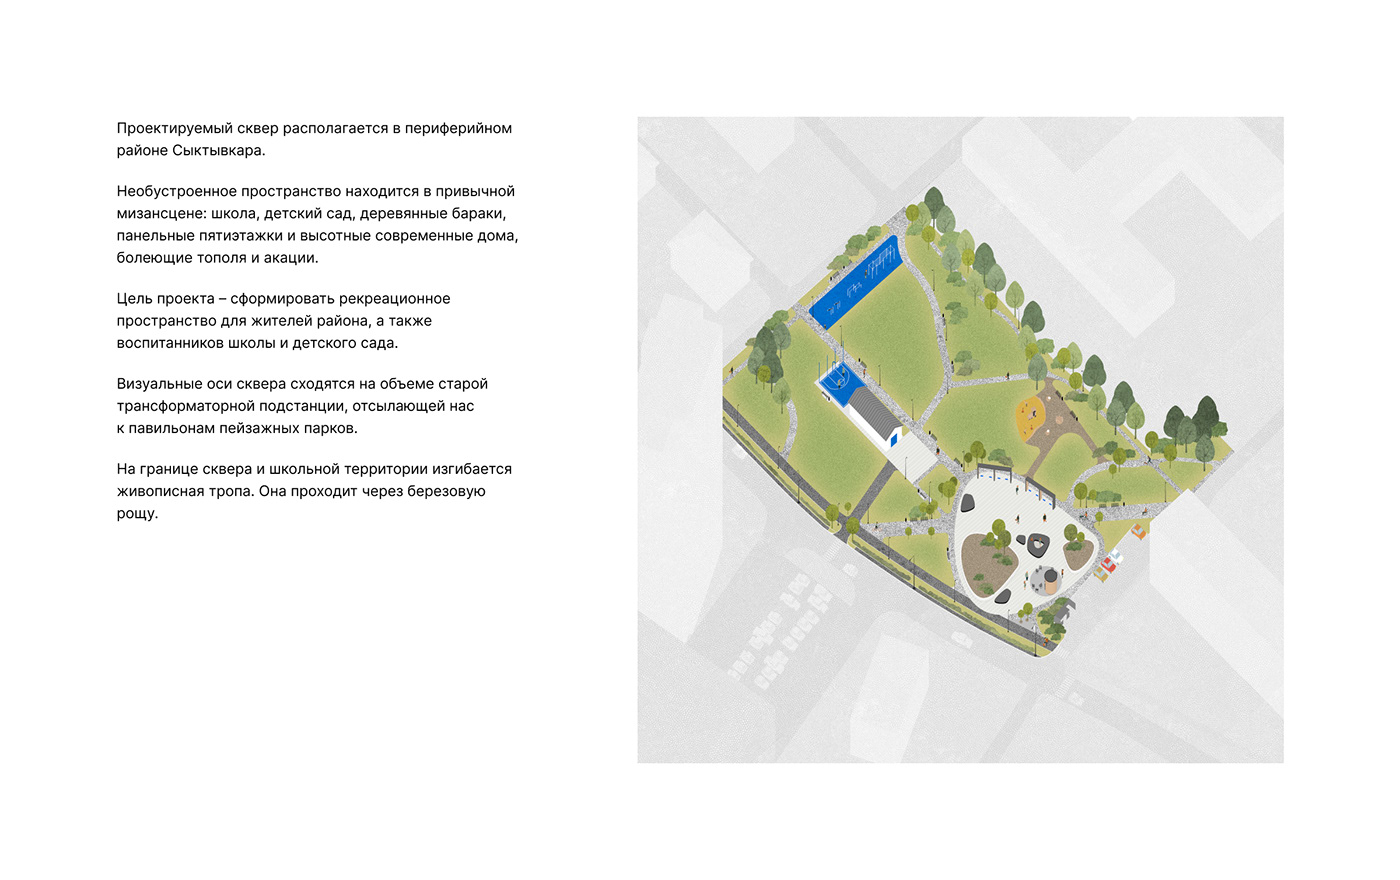 architecture Urban Design Landscape landscapedesign Landscape Design archviz visualization 3D